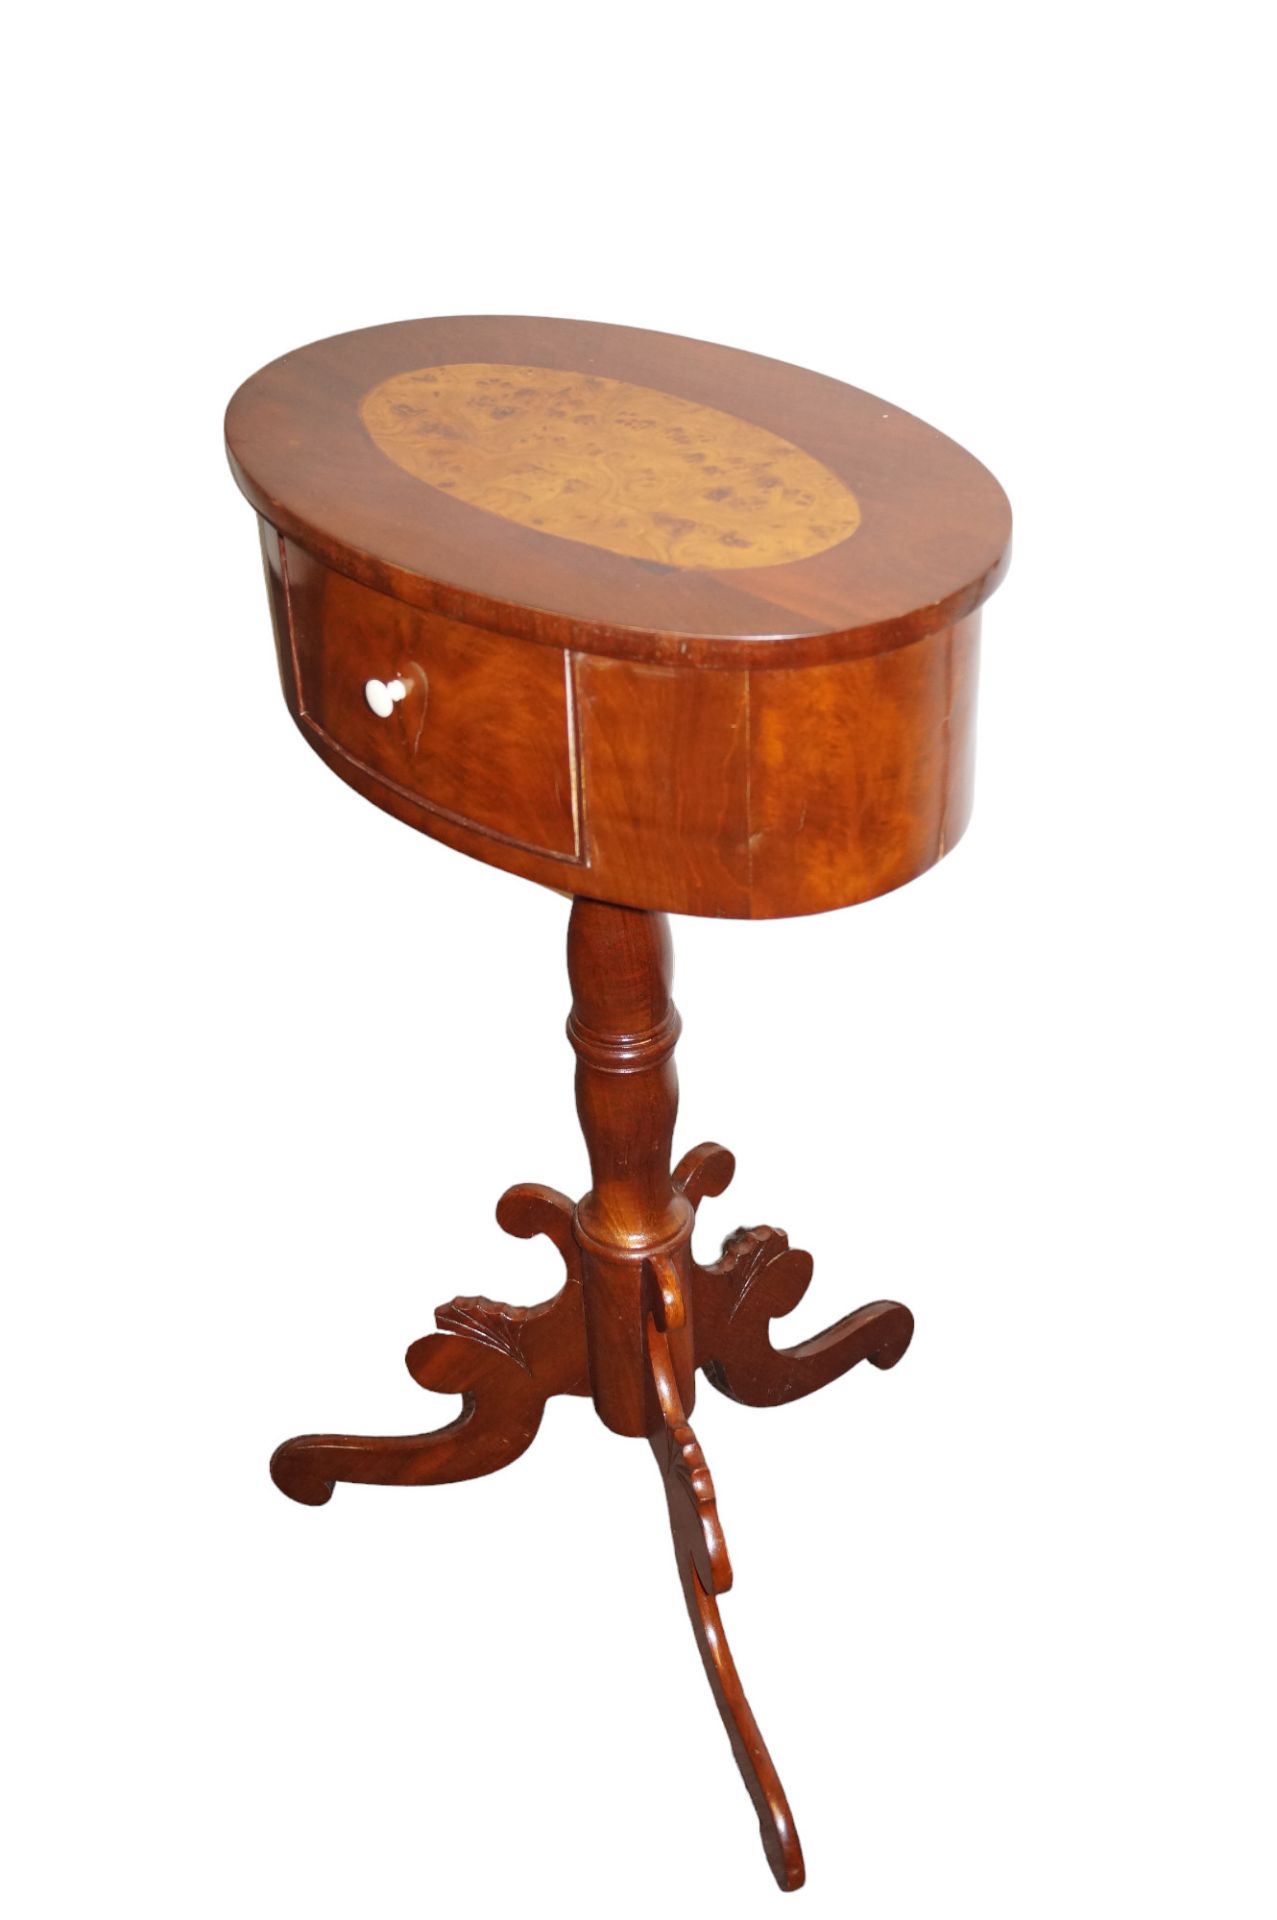 Ovales Tischchen in Tonnenform mit kleinem Schub auf der Stirnseite; dreipassiger Stand; auf der De - Bild 3 aus 5